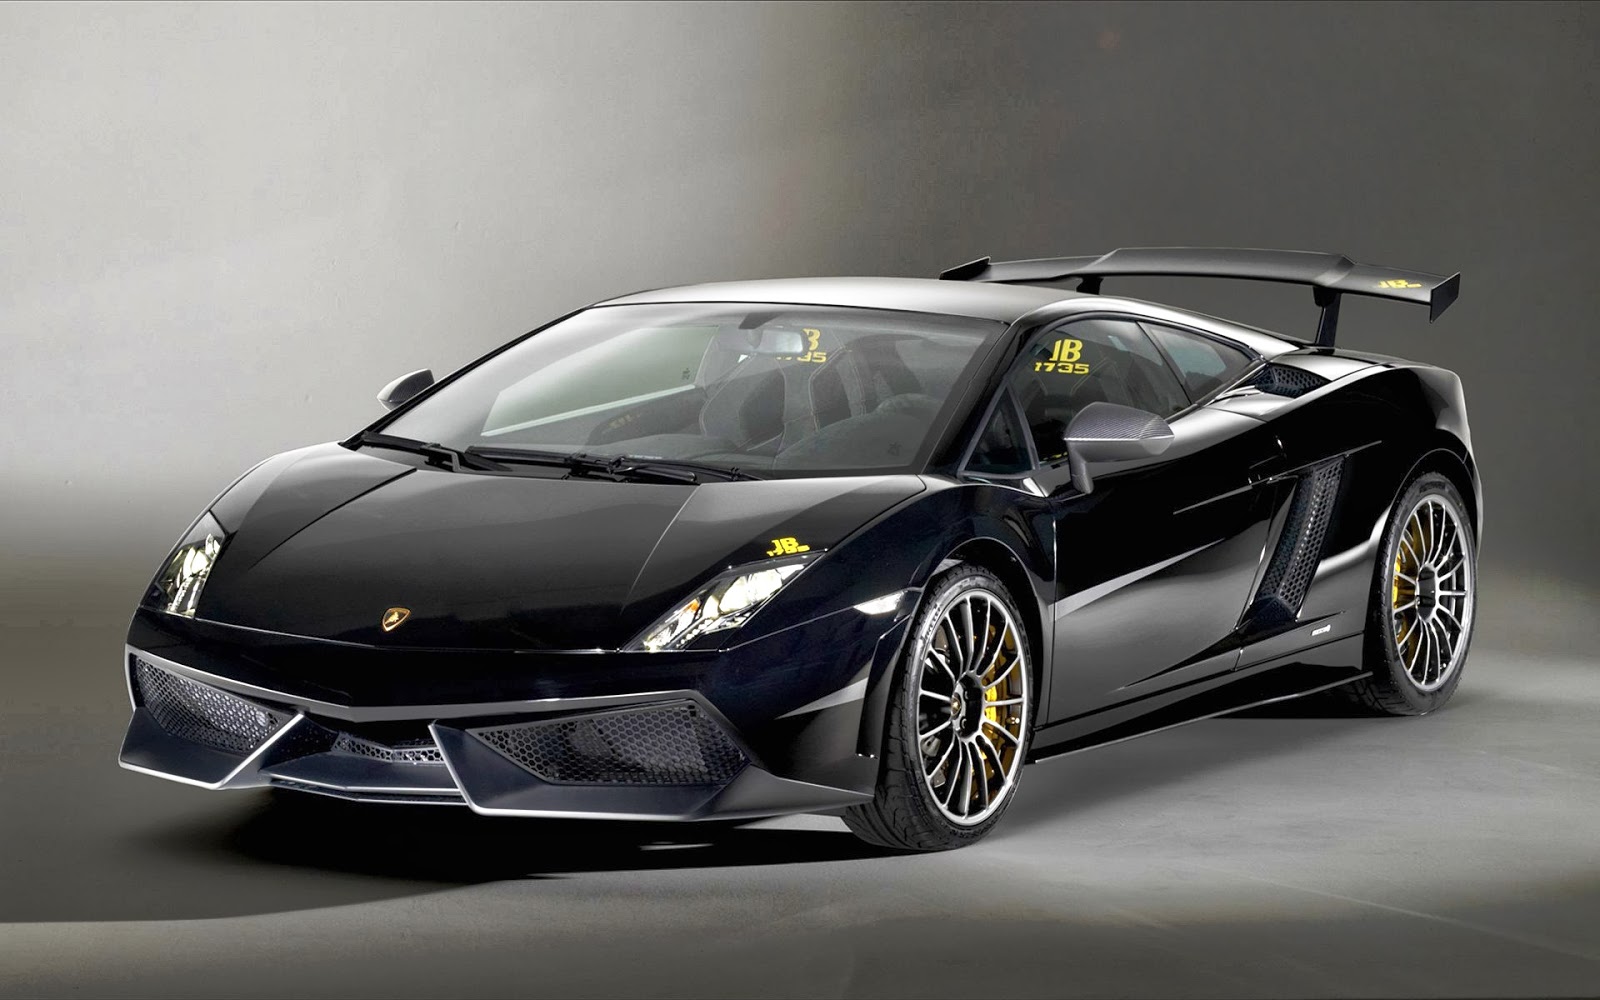 World Top Car Model Lamborghini Car Wallpapers And Images